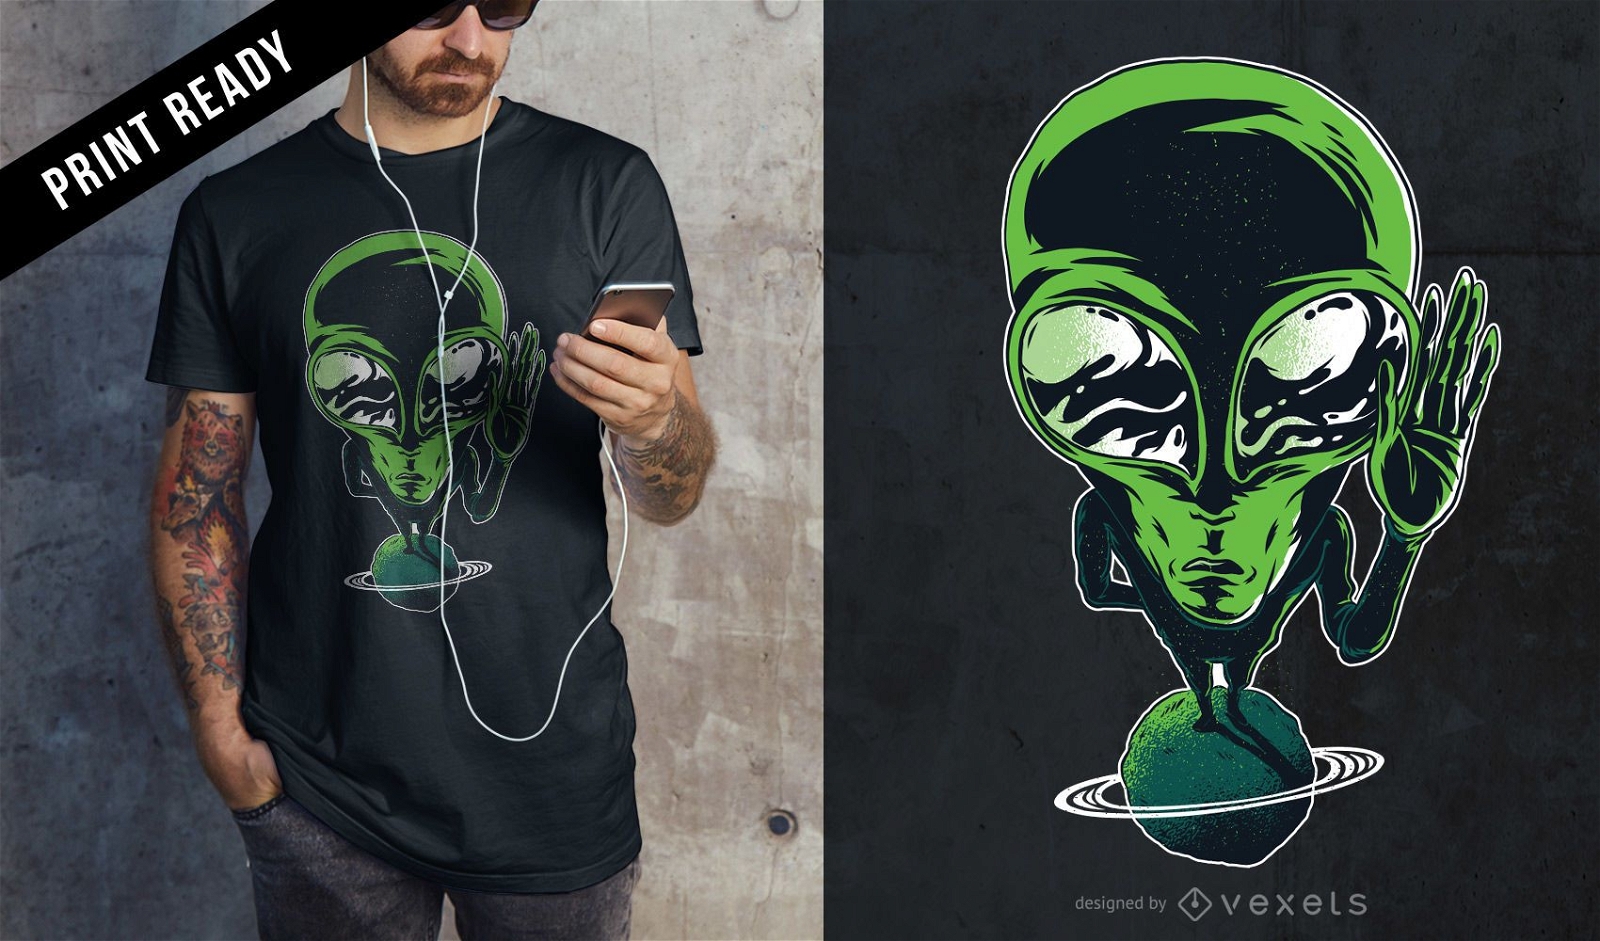 Diseño de camiseta alienígena en el planeta.